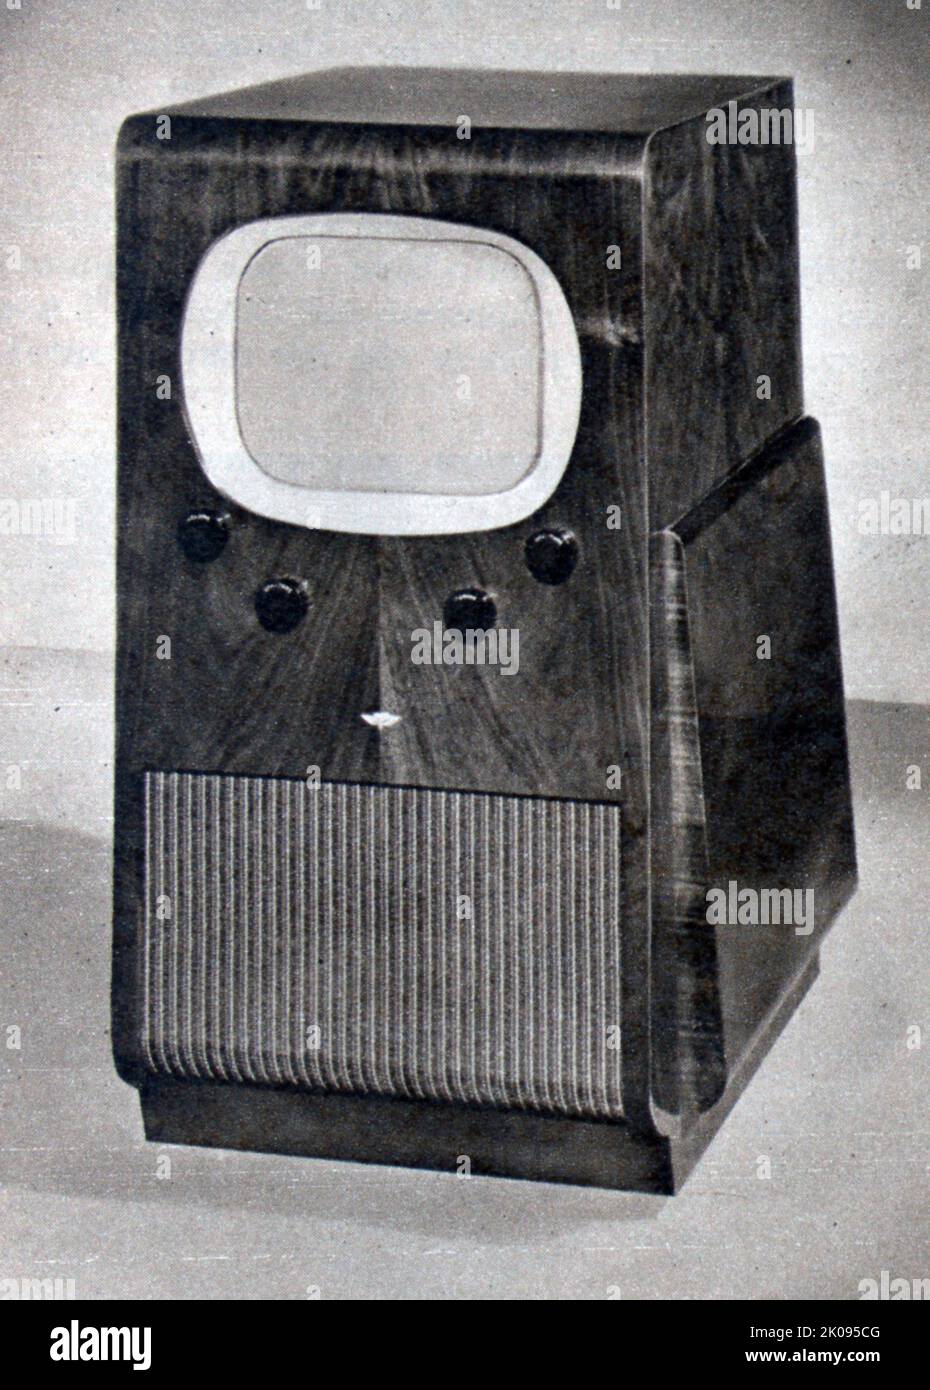 Receptor de consola de televisión con tubo de rayos catódicos de 12 pulgadas, por Kolster-Brandes. Foto de stock